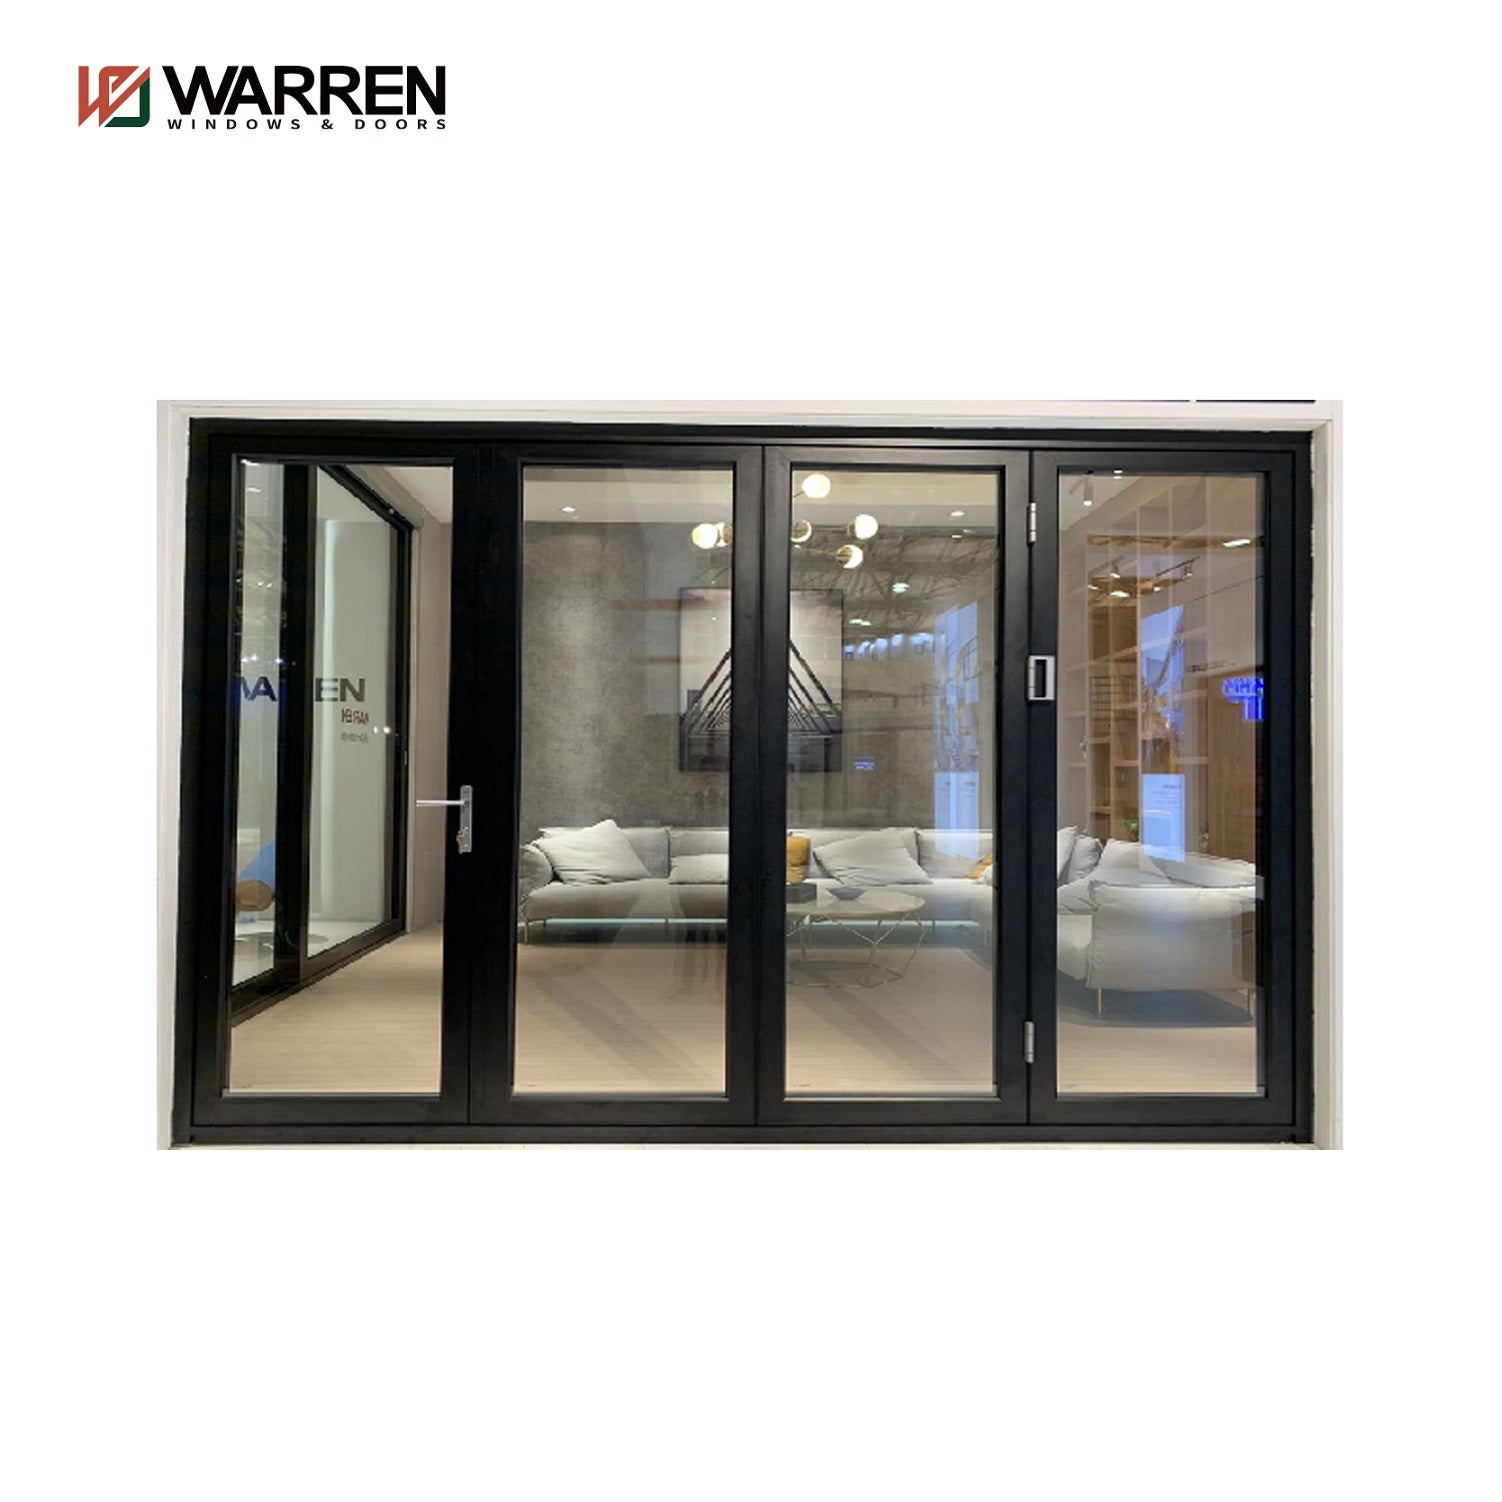 Warren North American Aluminum glass door Four Panels Exterior folding Sliding Doors Stacking Glass folding door for sale